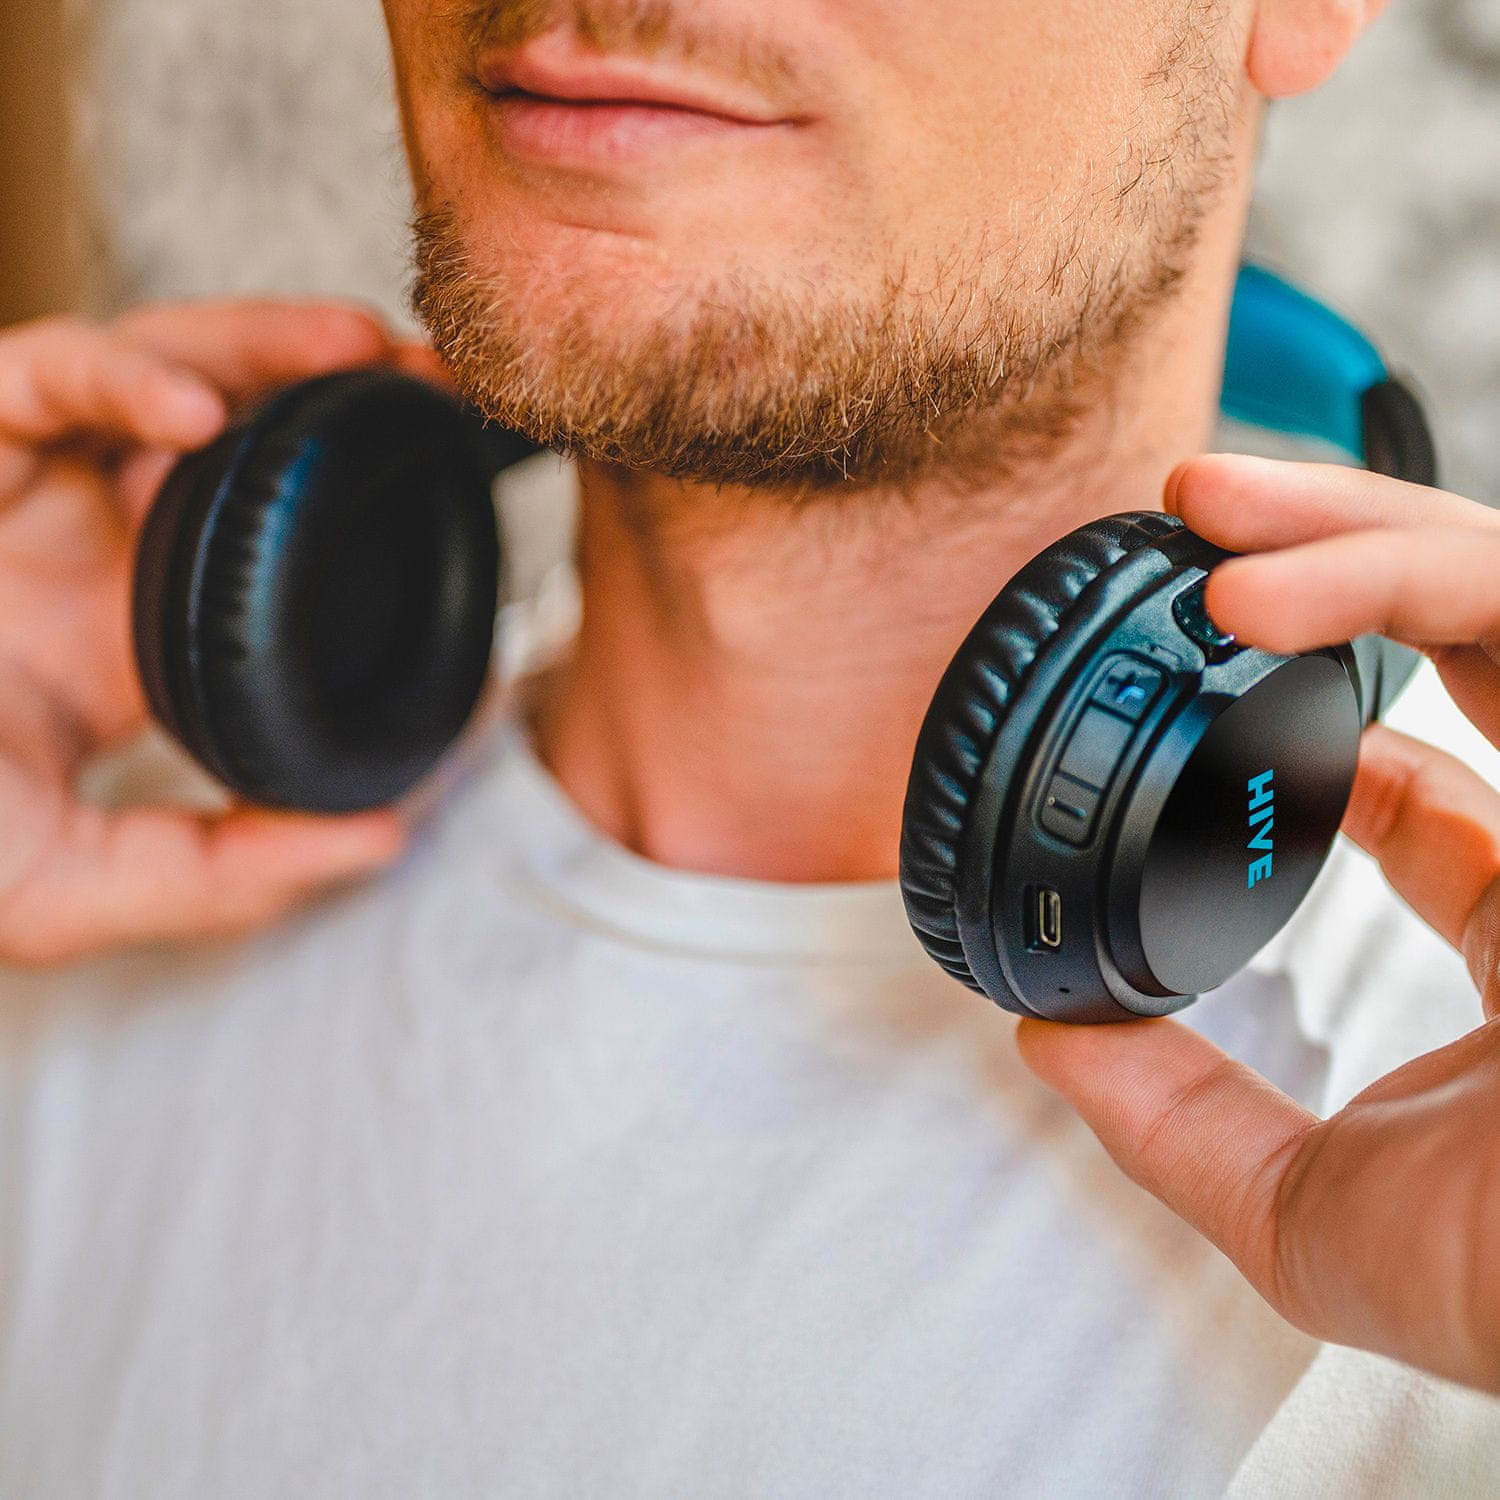 niceboy přenosná sluchátka hive 3 prodigy lehká pohodlná bezdrátová Bluetooth 5.0 sluchátka 32 h na nabití audio kabel libovolně drátová usb nabíjení skvělý zvuk ipx4 odolná hlasoví asistenti handsfree mikrofon maxxbass čistý zvuk